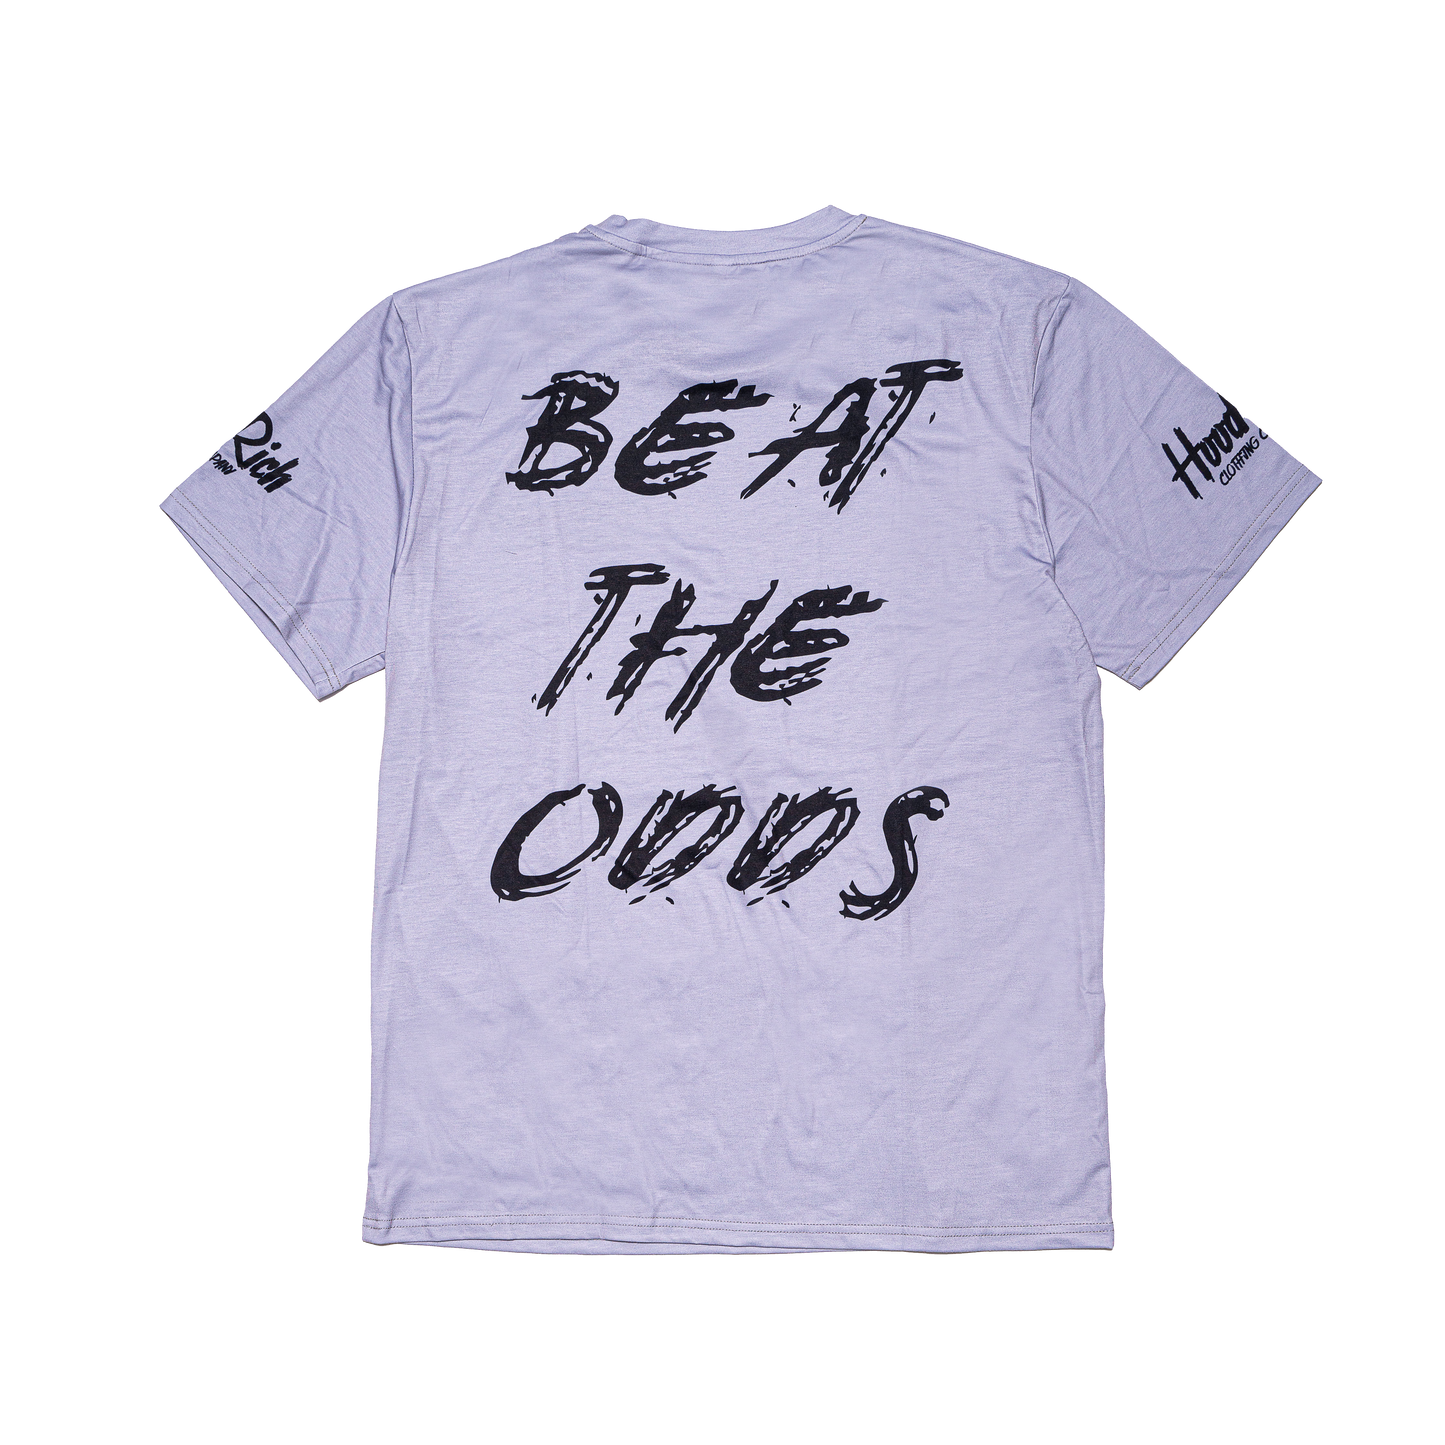 Grey Beat The Odds Shirt & Shorts Set